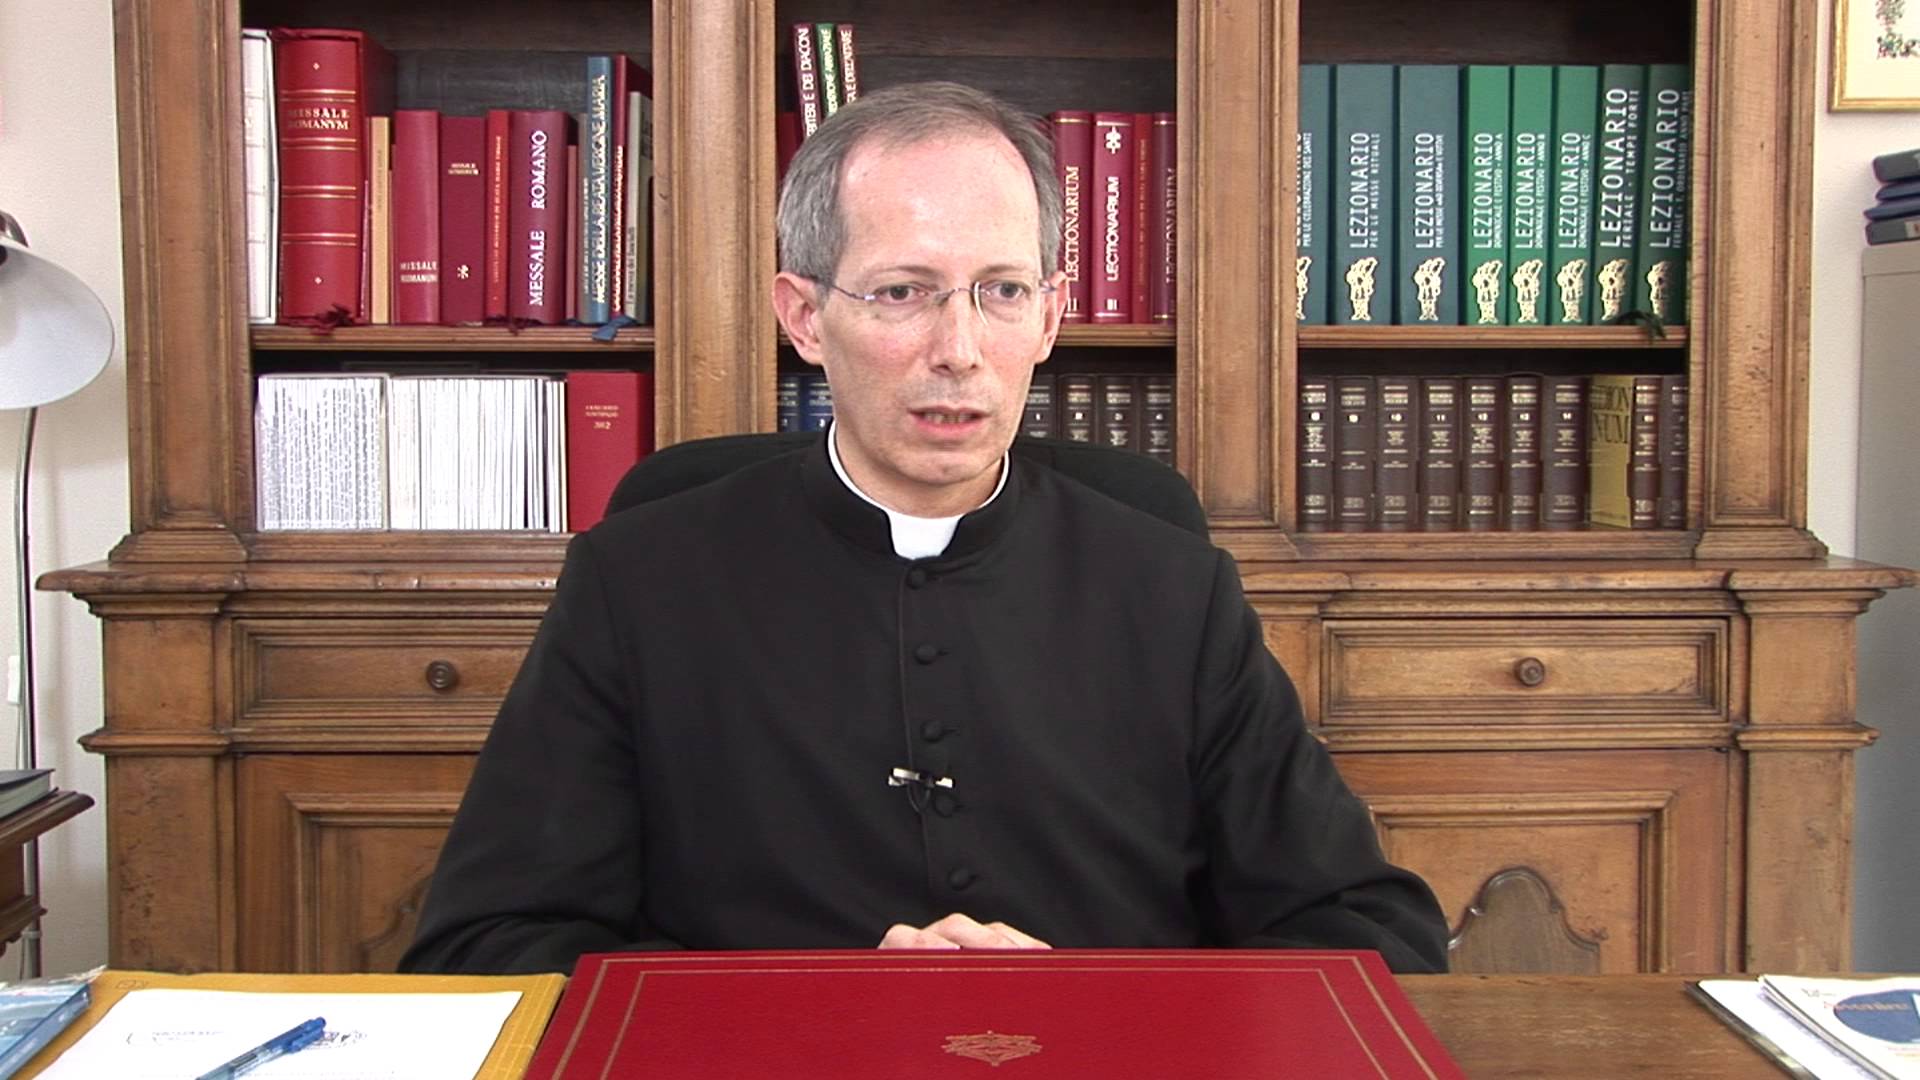 Mgr Guido Marini, cérémoniaire du pape, a été nommé évêque de Tortona  | | capture d'écran 